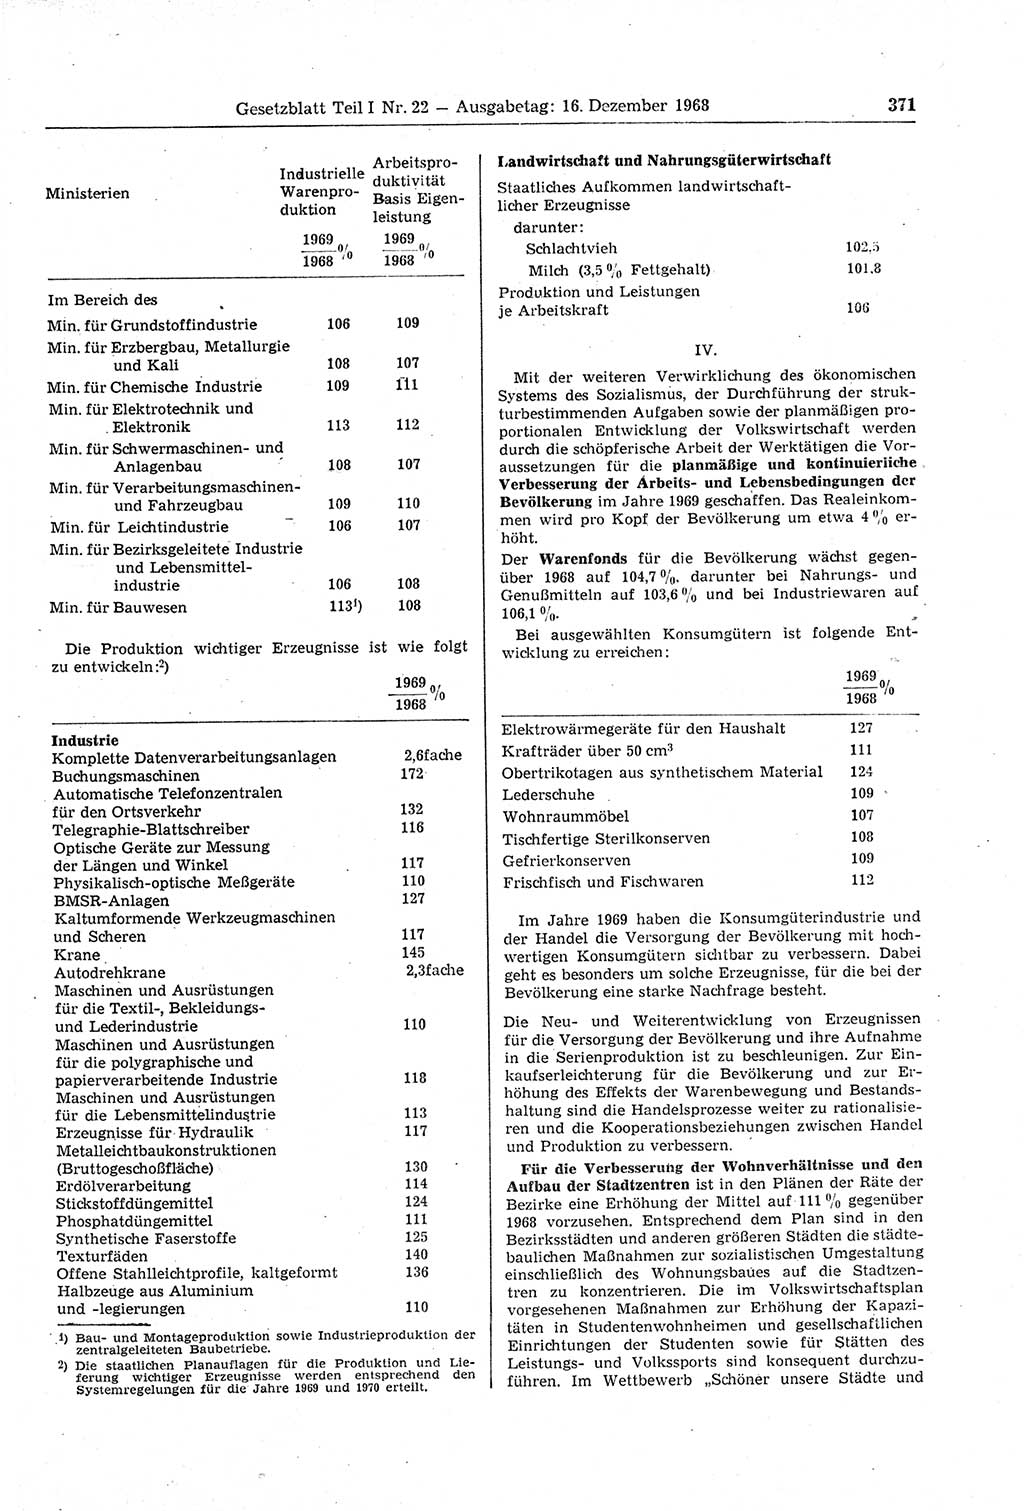 Gesetzblatt (GBl.) der Deutschen Demokratischen Republik (DDR) Teil Ⅰ 1968, Seite 371 (GBl. DDR Ⅰ 1968, S. 371)